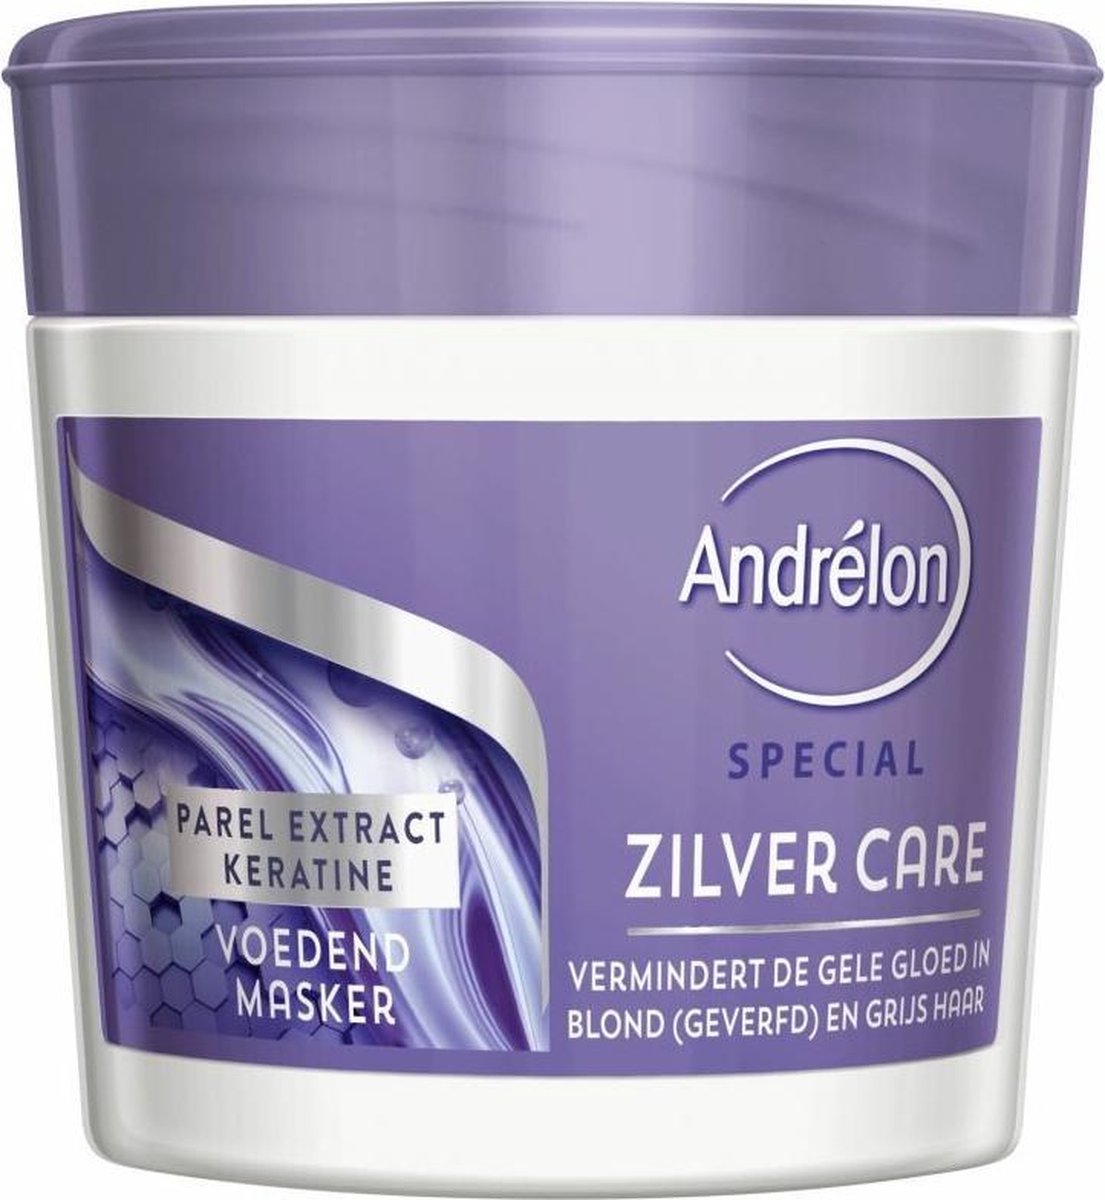 Andrelon Haarmasker Zilver Care 250 ml | bol.com